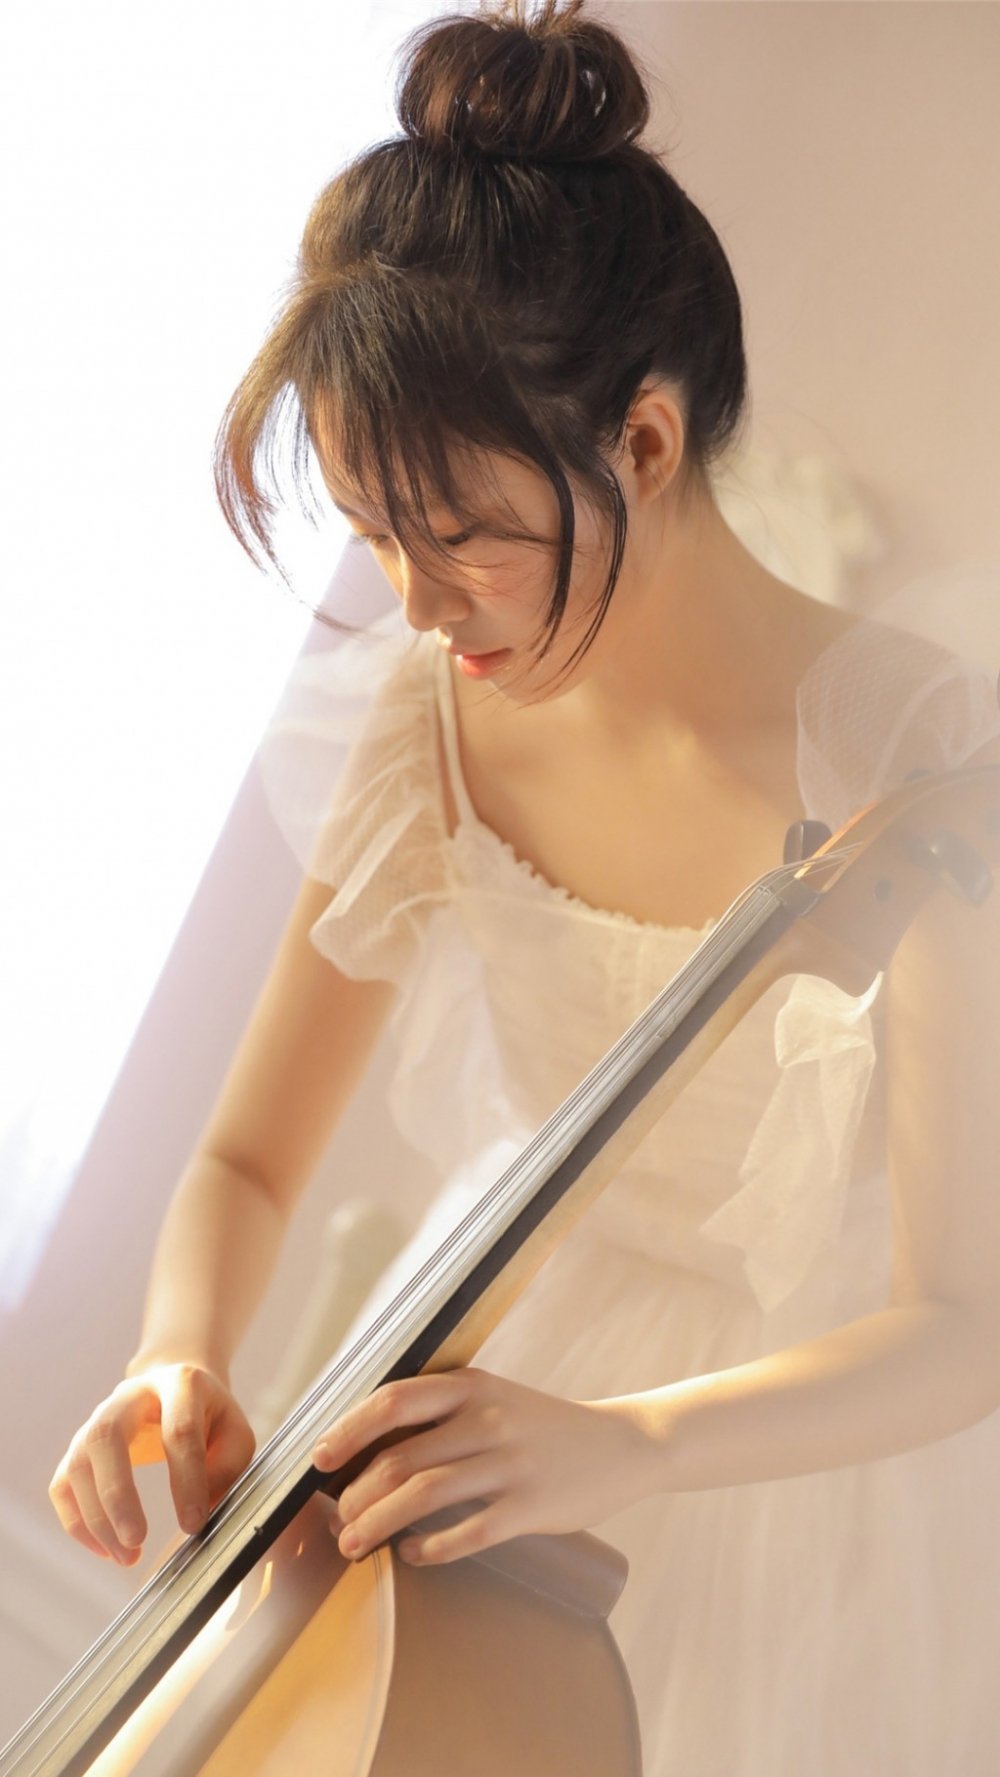 文艺美女大提琴写真图片